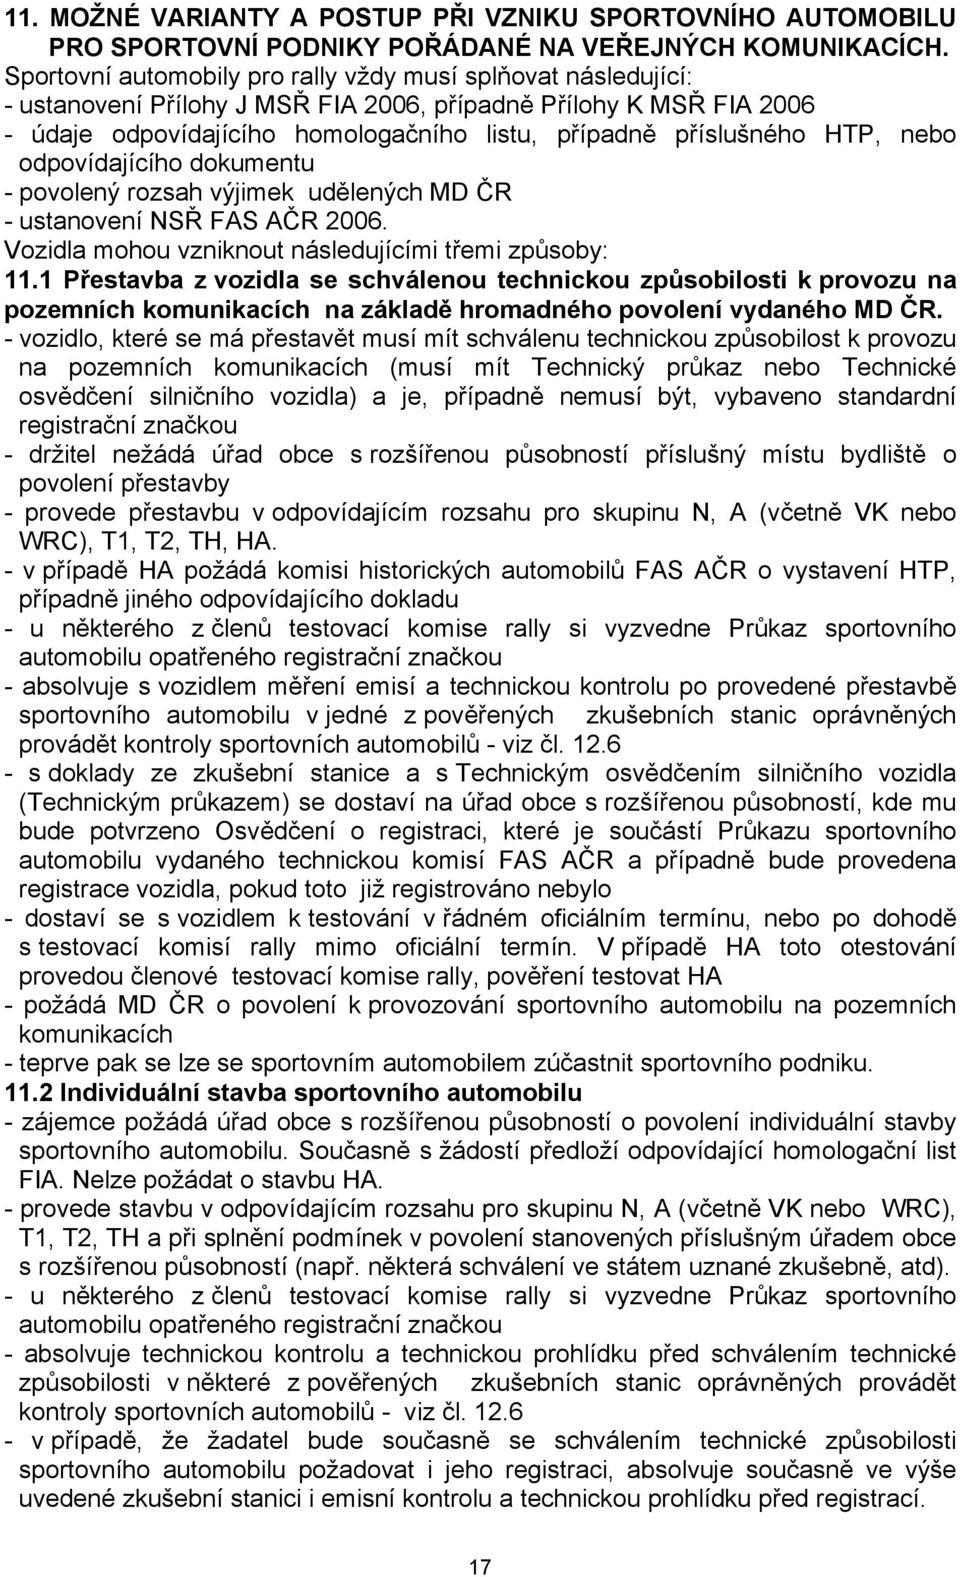 HTP, nebo odpovídajícího dokumentu - povolený rozsah výjimek udělených MD ČR - ustanovení NSŘ FAS AČR 2006. Vozidla mohou vzniknout následujícími třemi způsoby: 11.